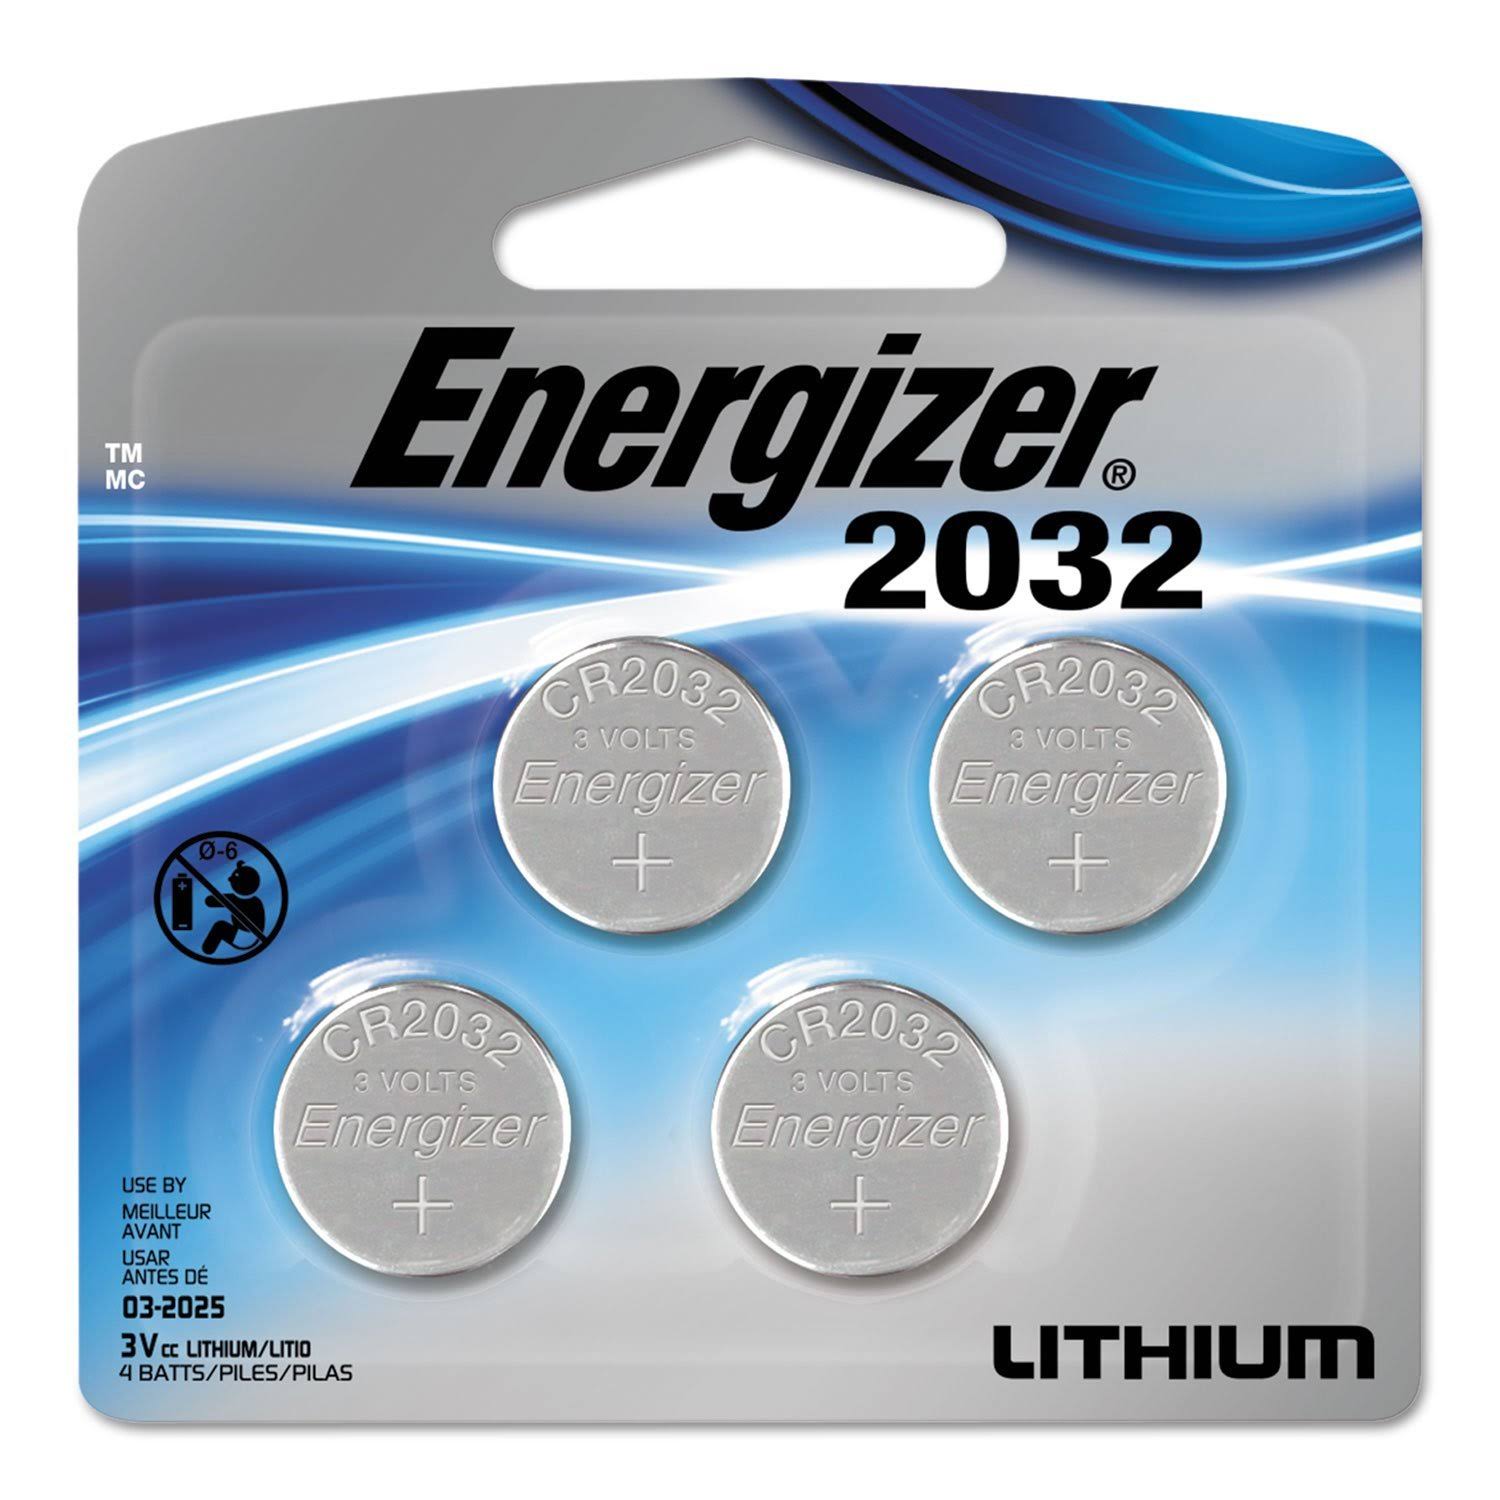 Energizer Zero Mercury Lithium Battery - 4 Pack, 3V